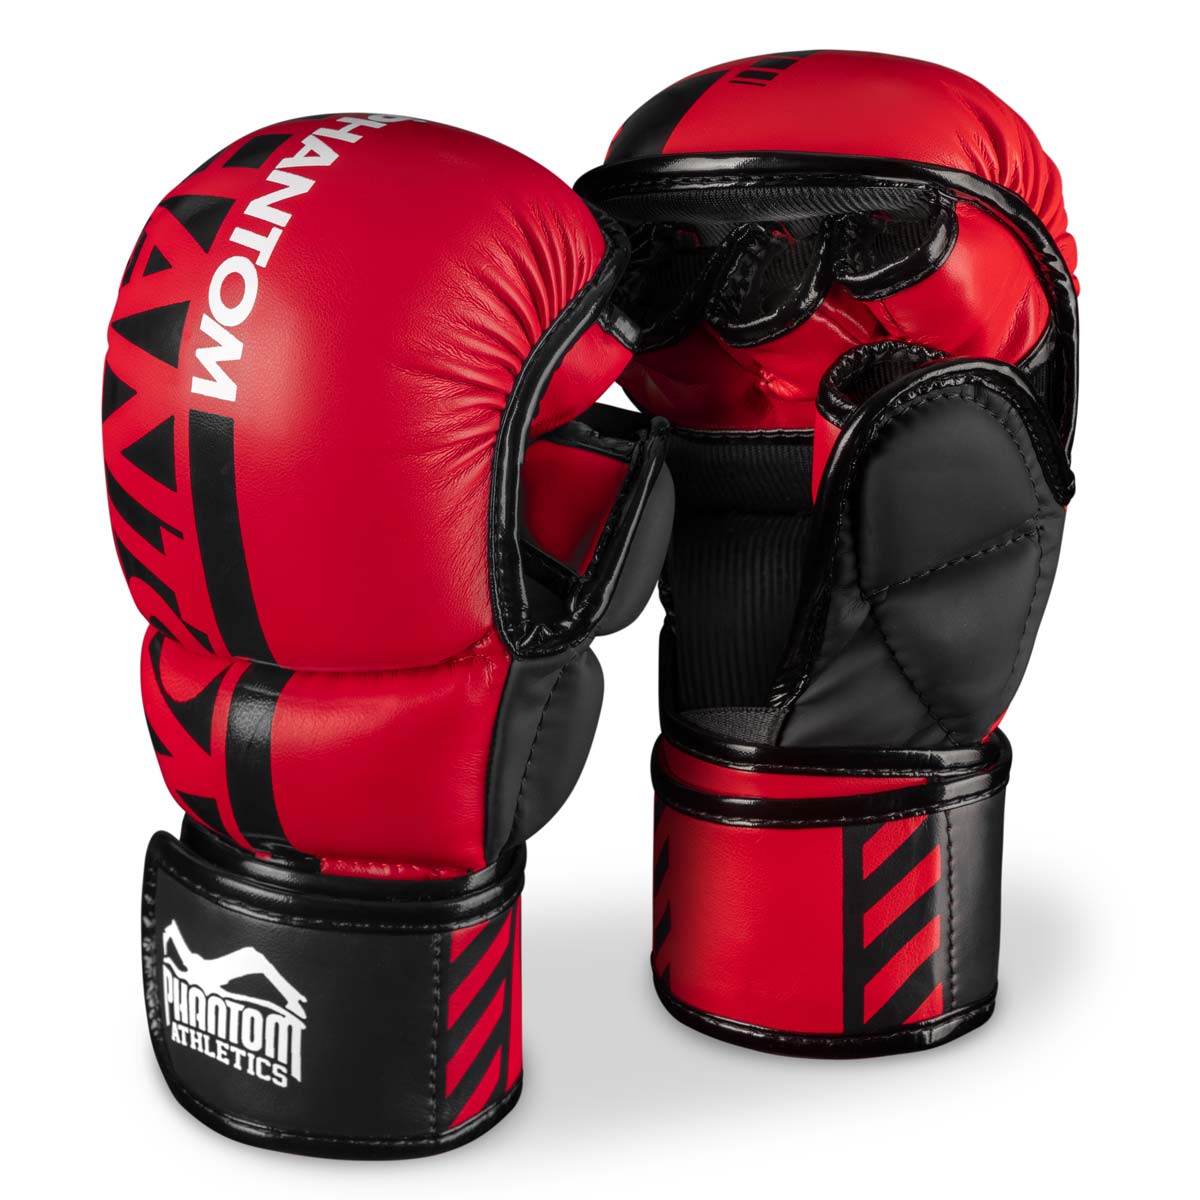 Phantom MMA rokavice za sparing. Najvarnejša rokavica za vaš trening borilnih veščin. Zdaj v omejeni rdeči barvi.